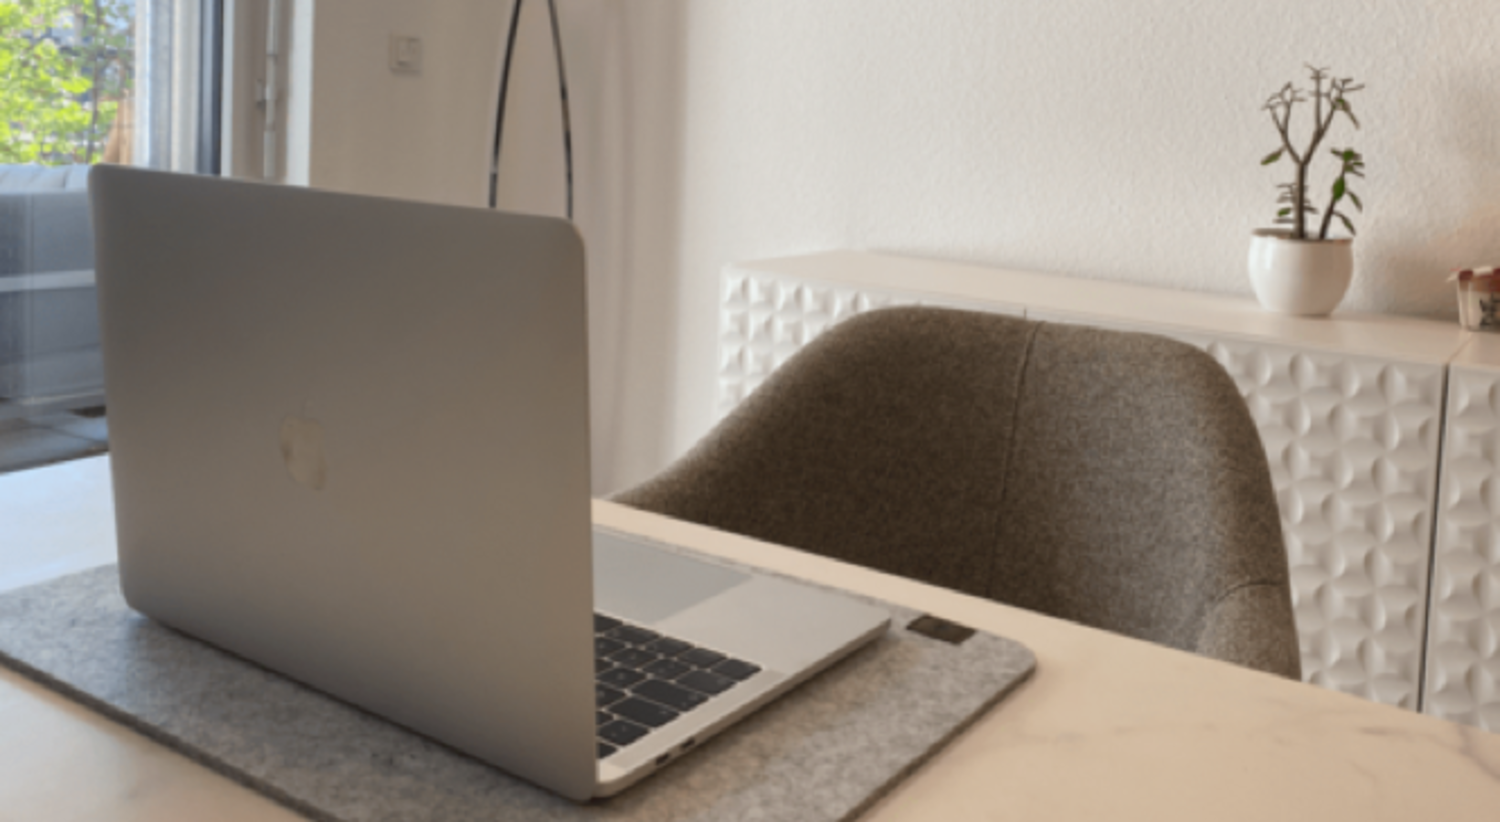 Büro Stuhl Laptop Apple